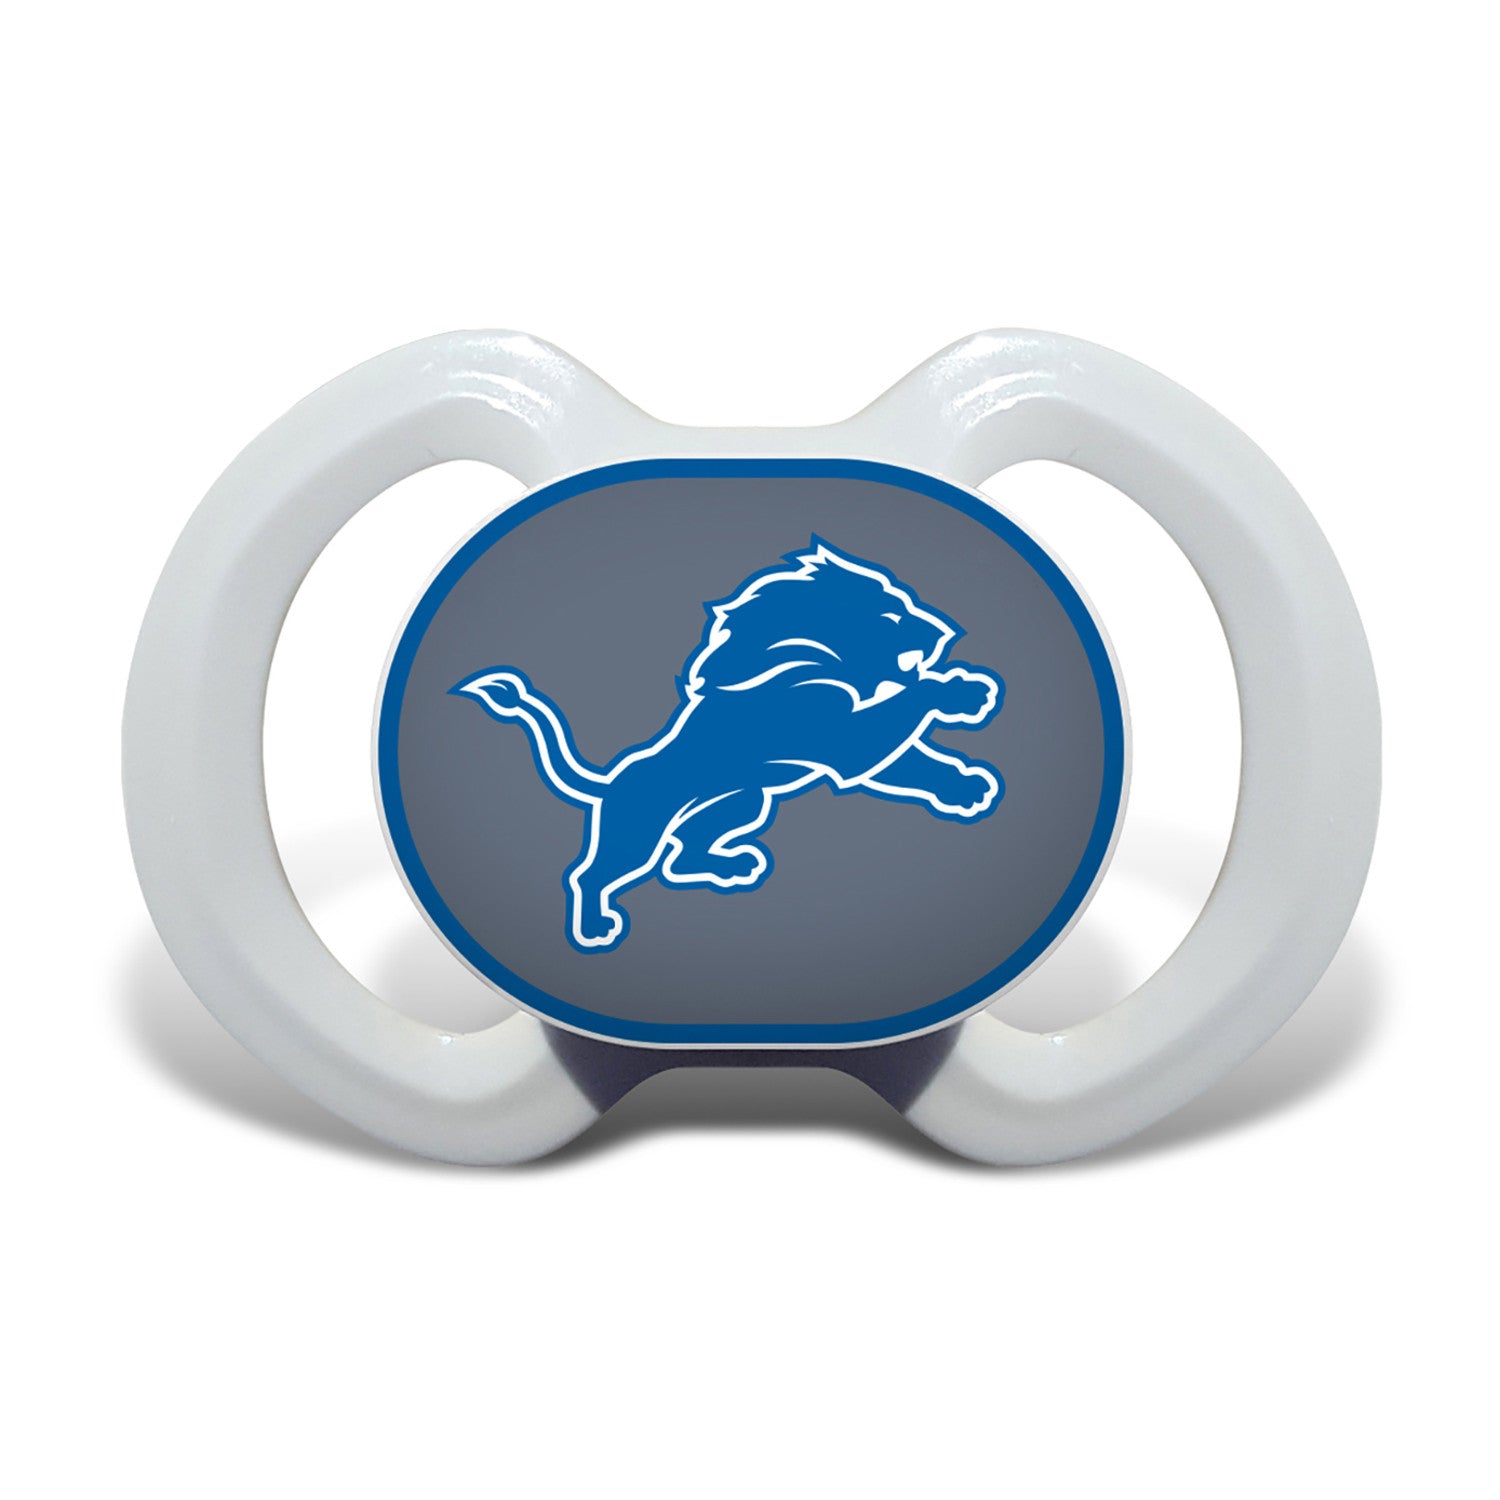 Detroit Lions NFL 3-Piece Gift Set